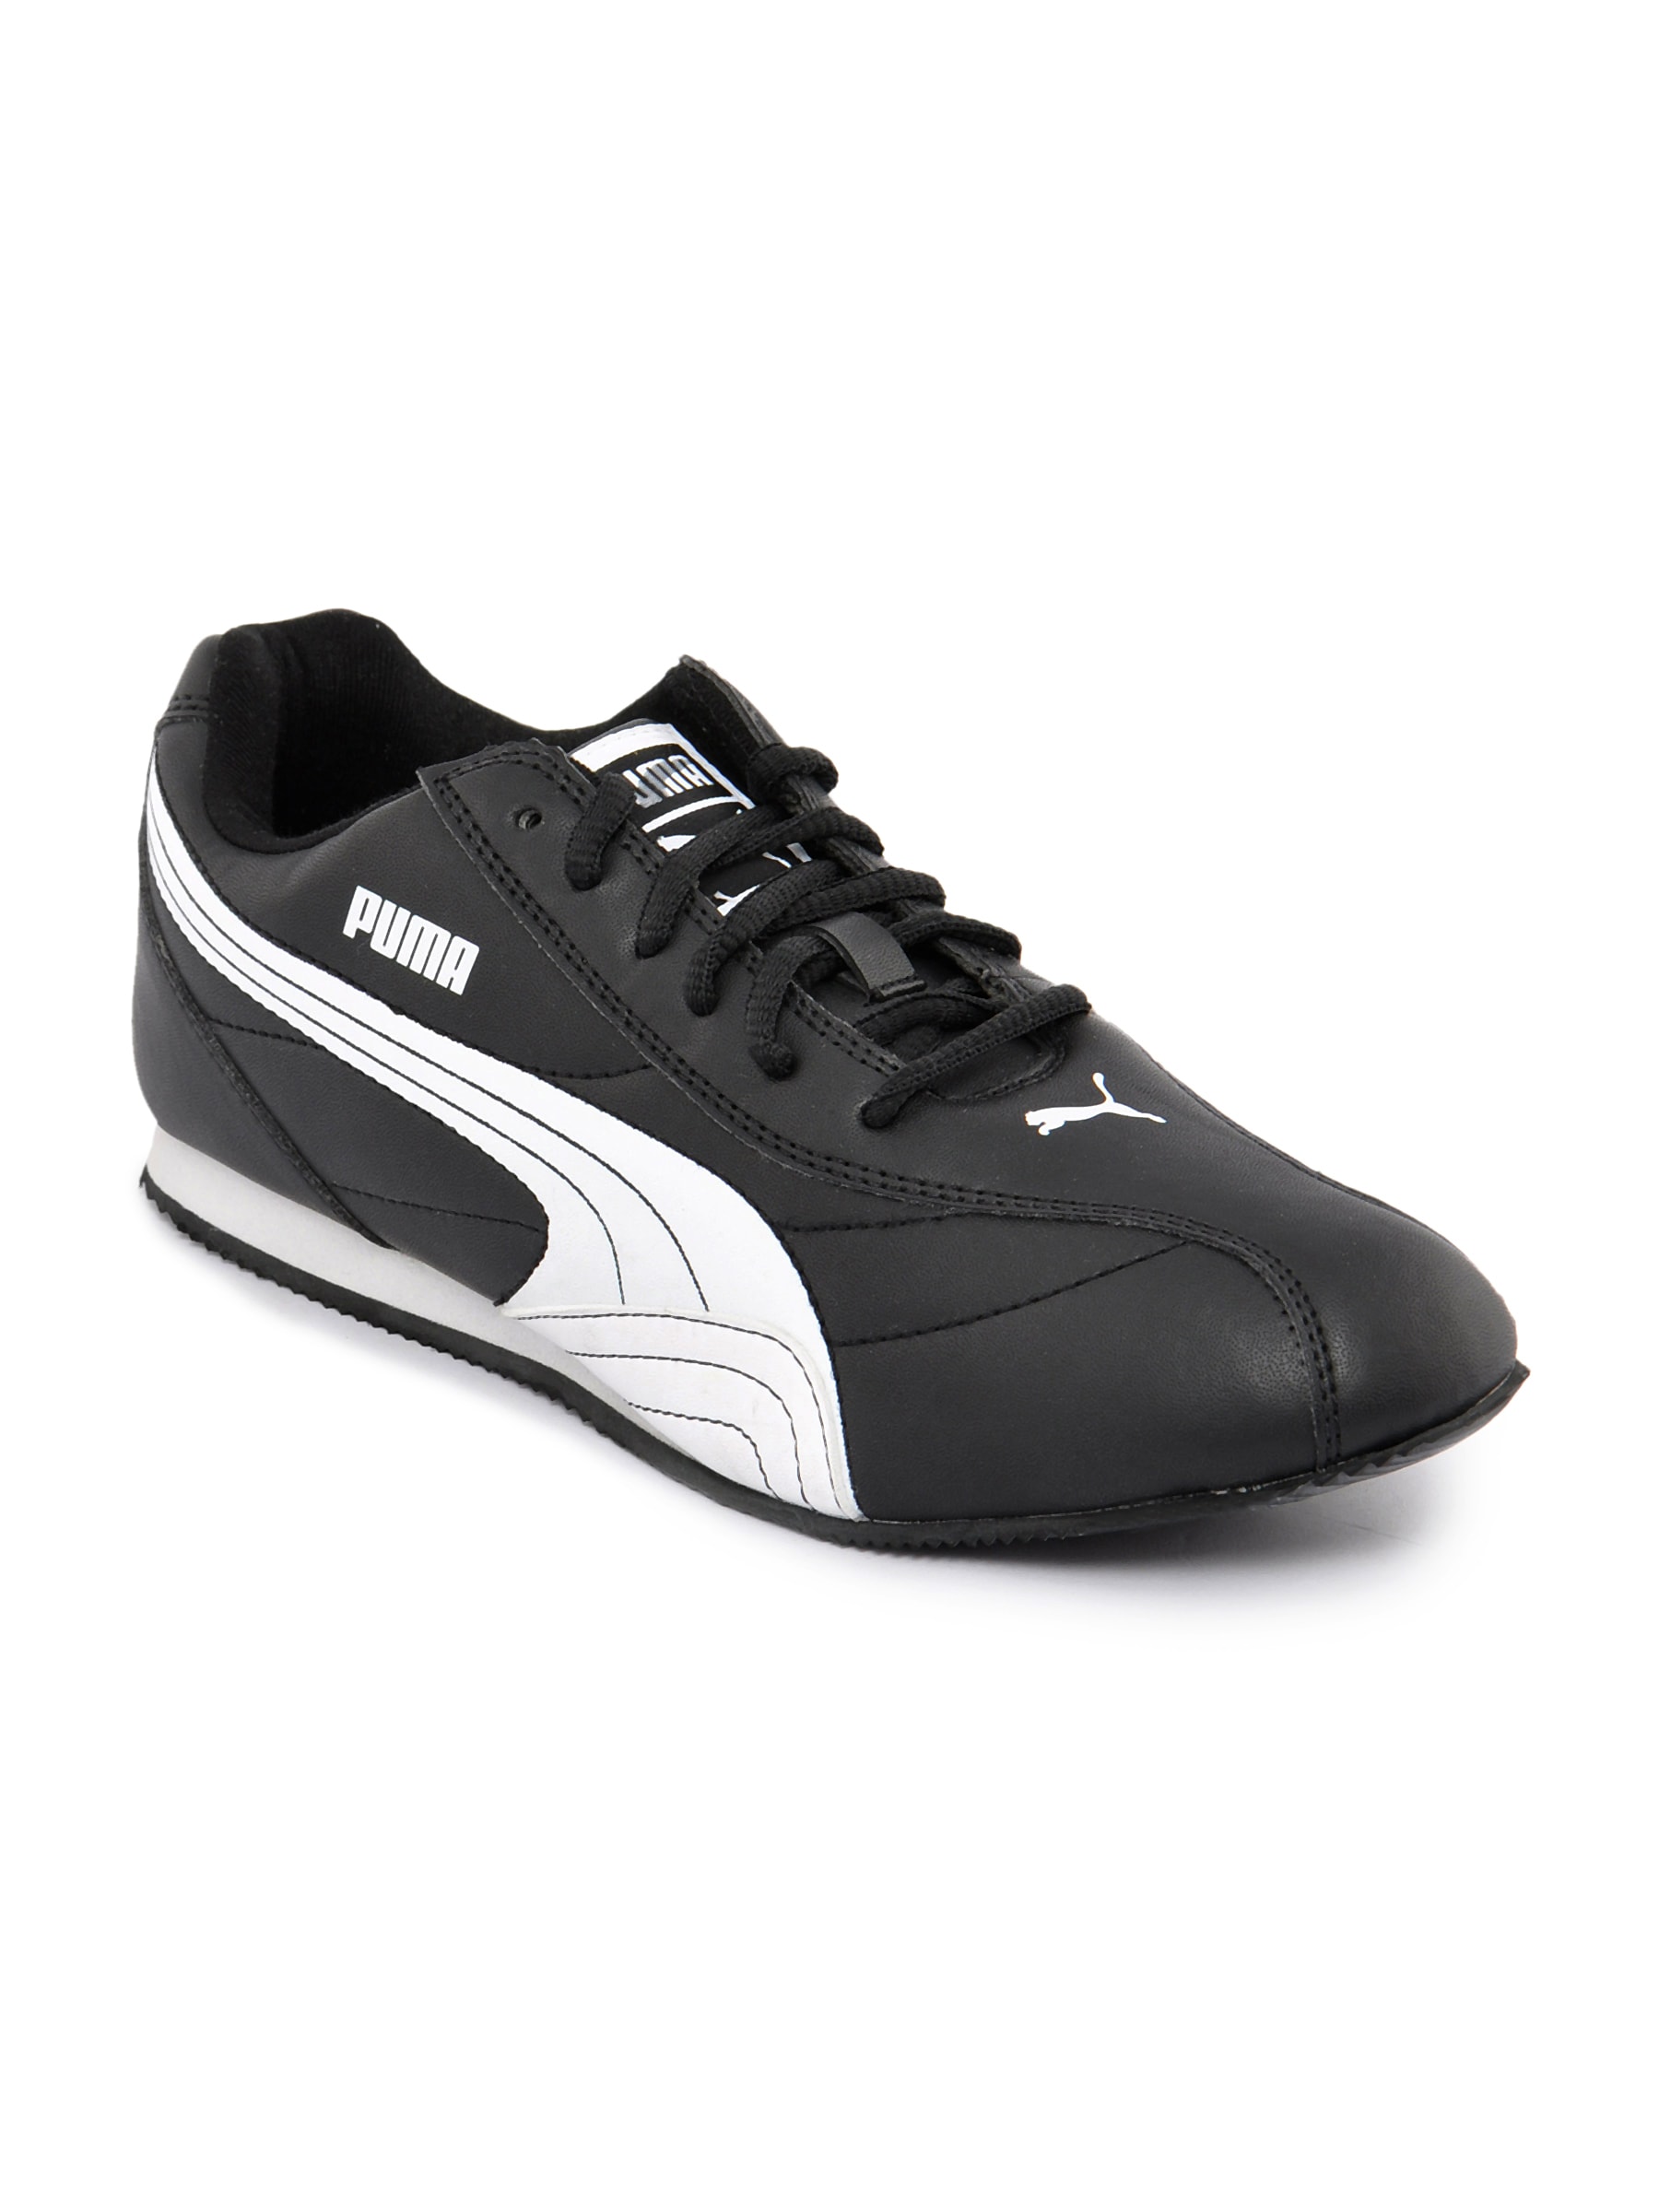 Puma Men Wirko Black Sports Shoe